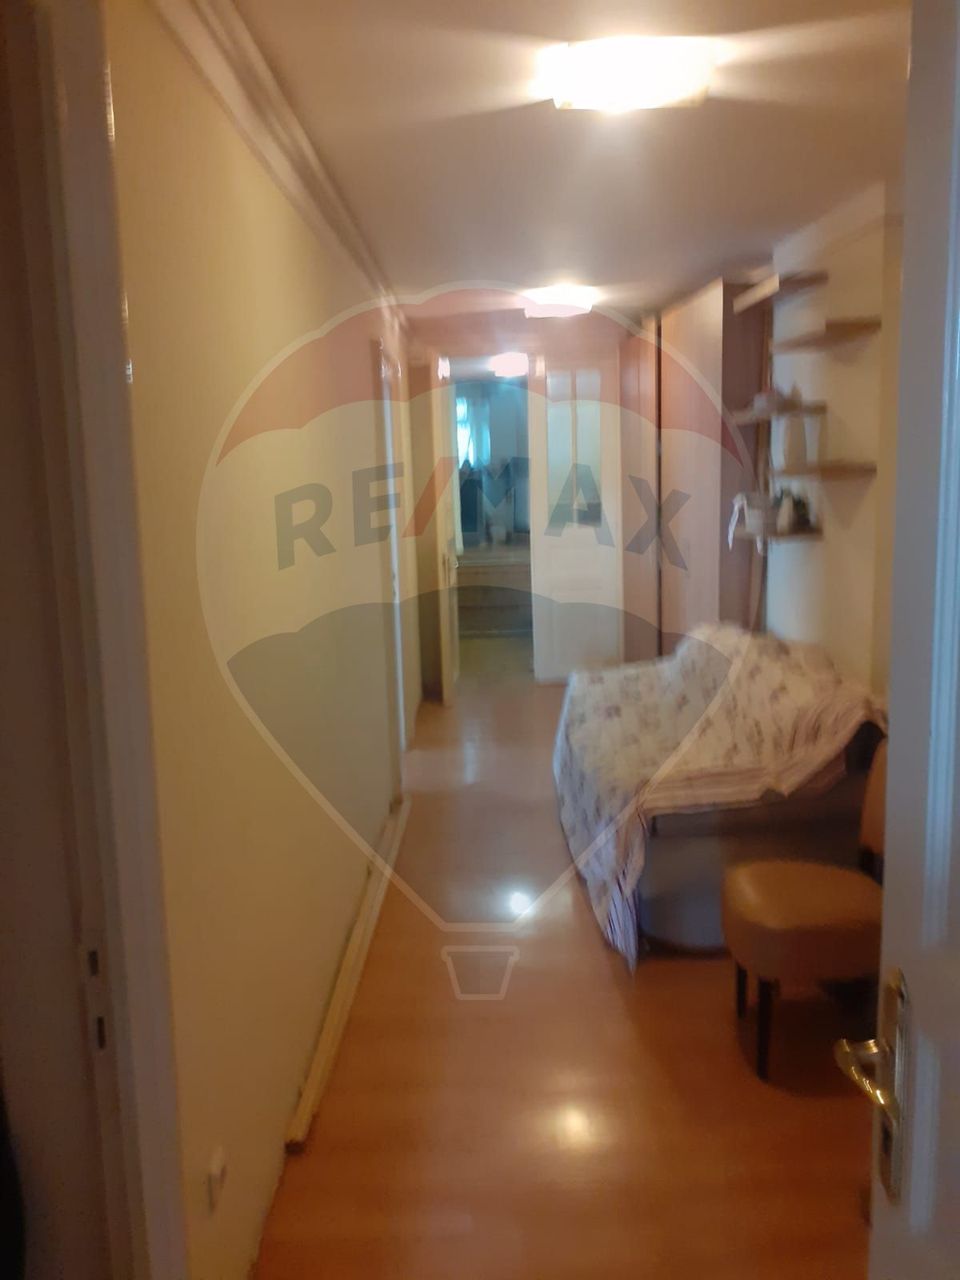 Apartament cu 5 camere în zona Mosilor, cladire cu aer istoric